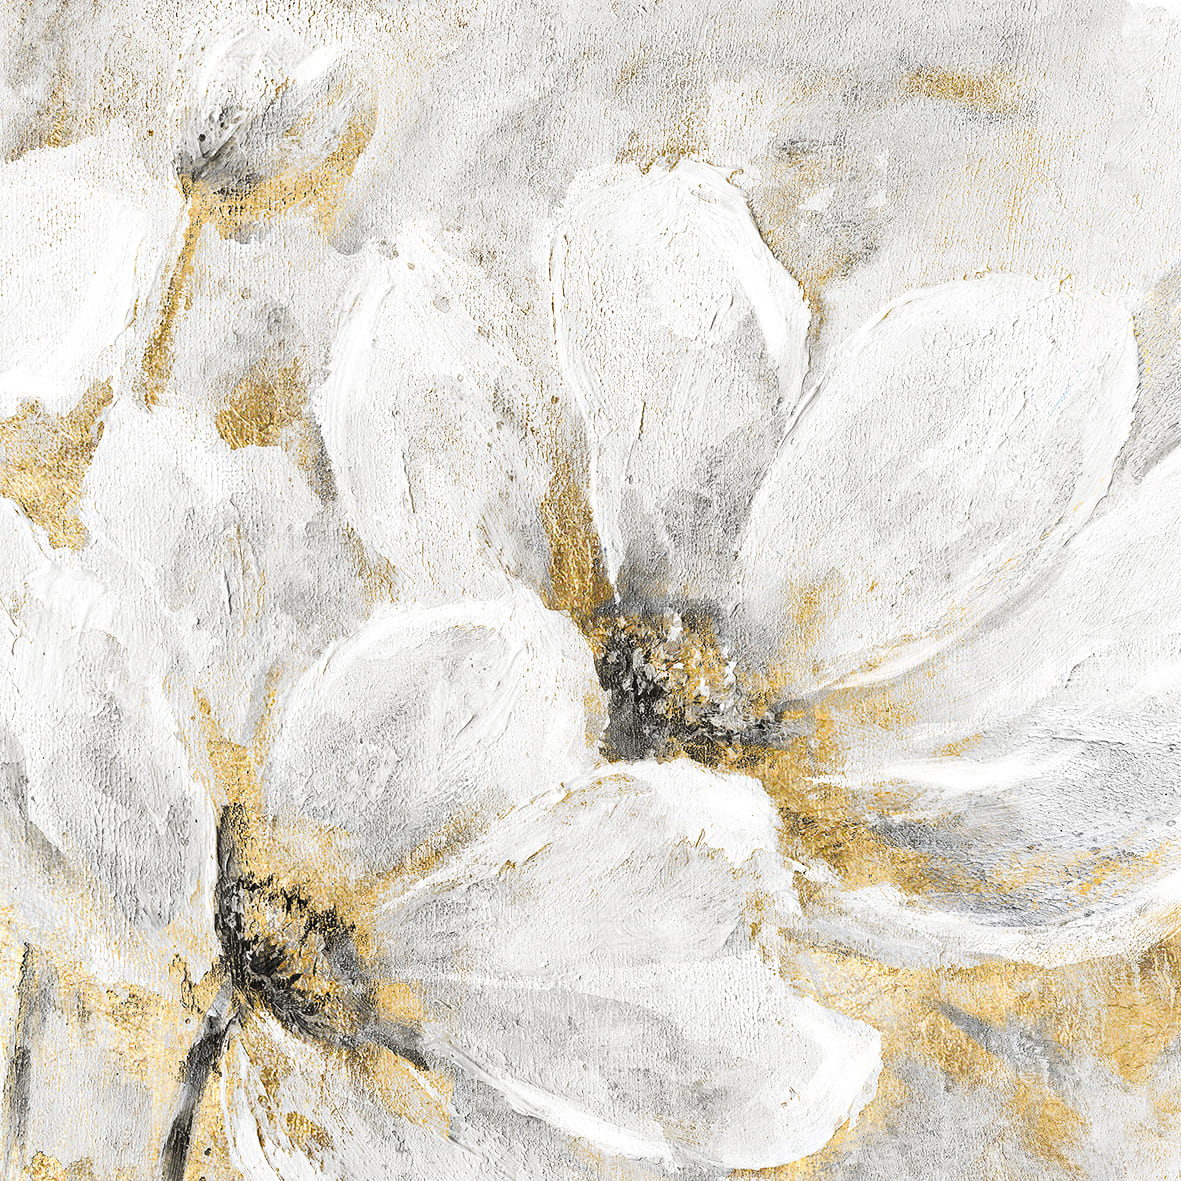 Ölbild weiße Blumen 70x70cm